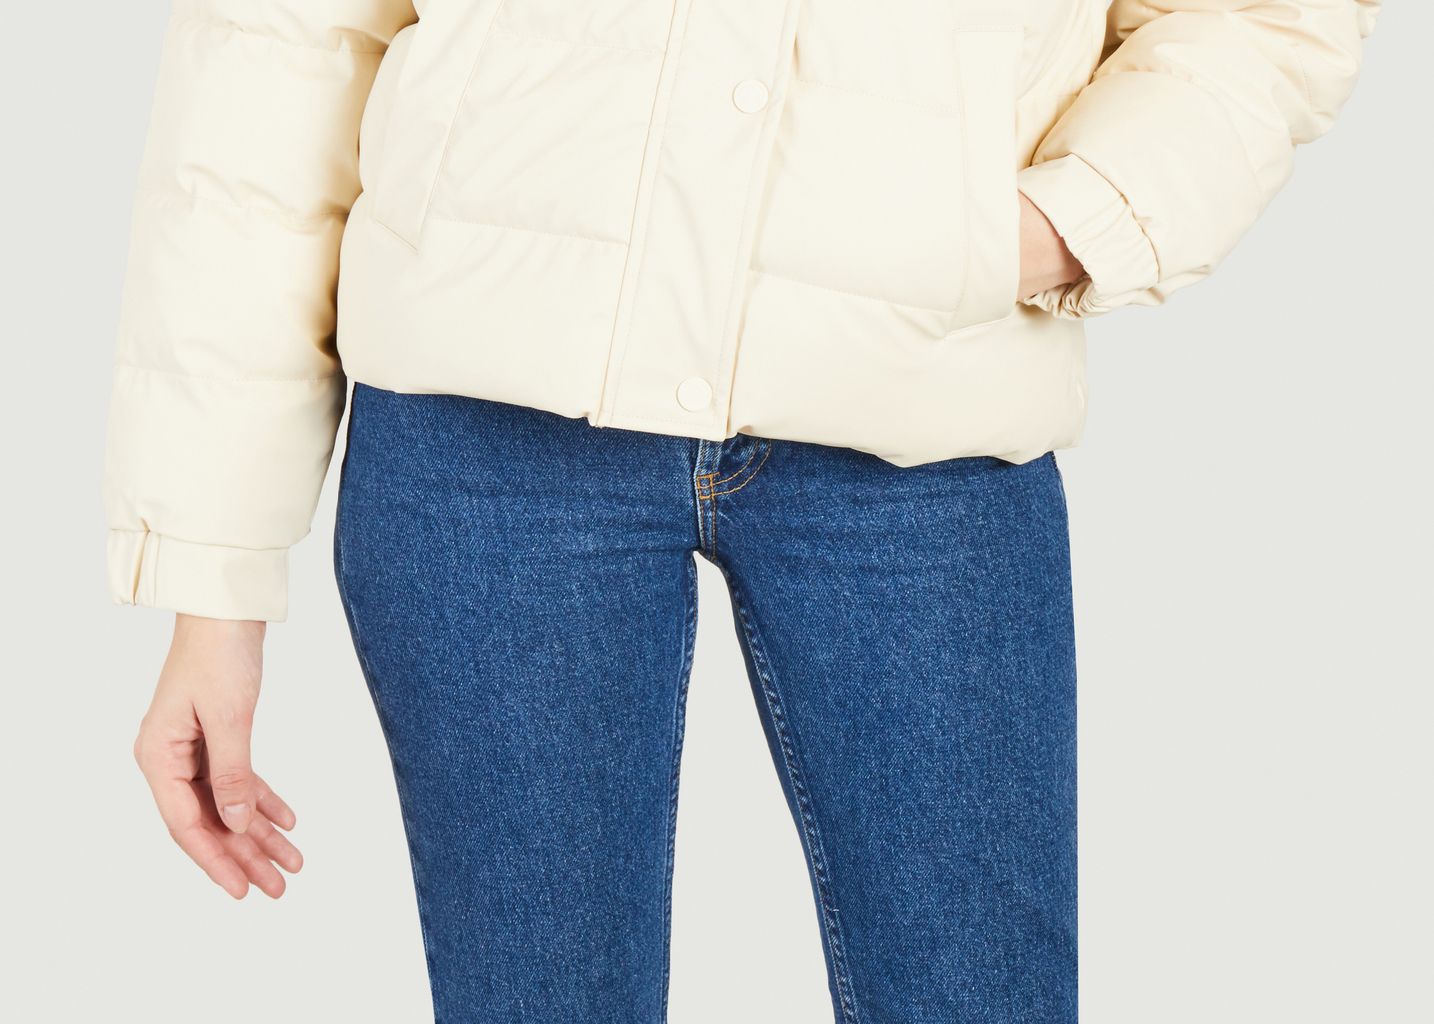 Women's avalanche jacket - Petit Bateau